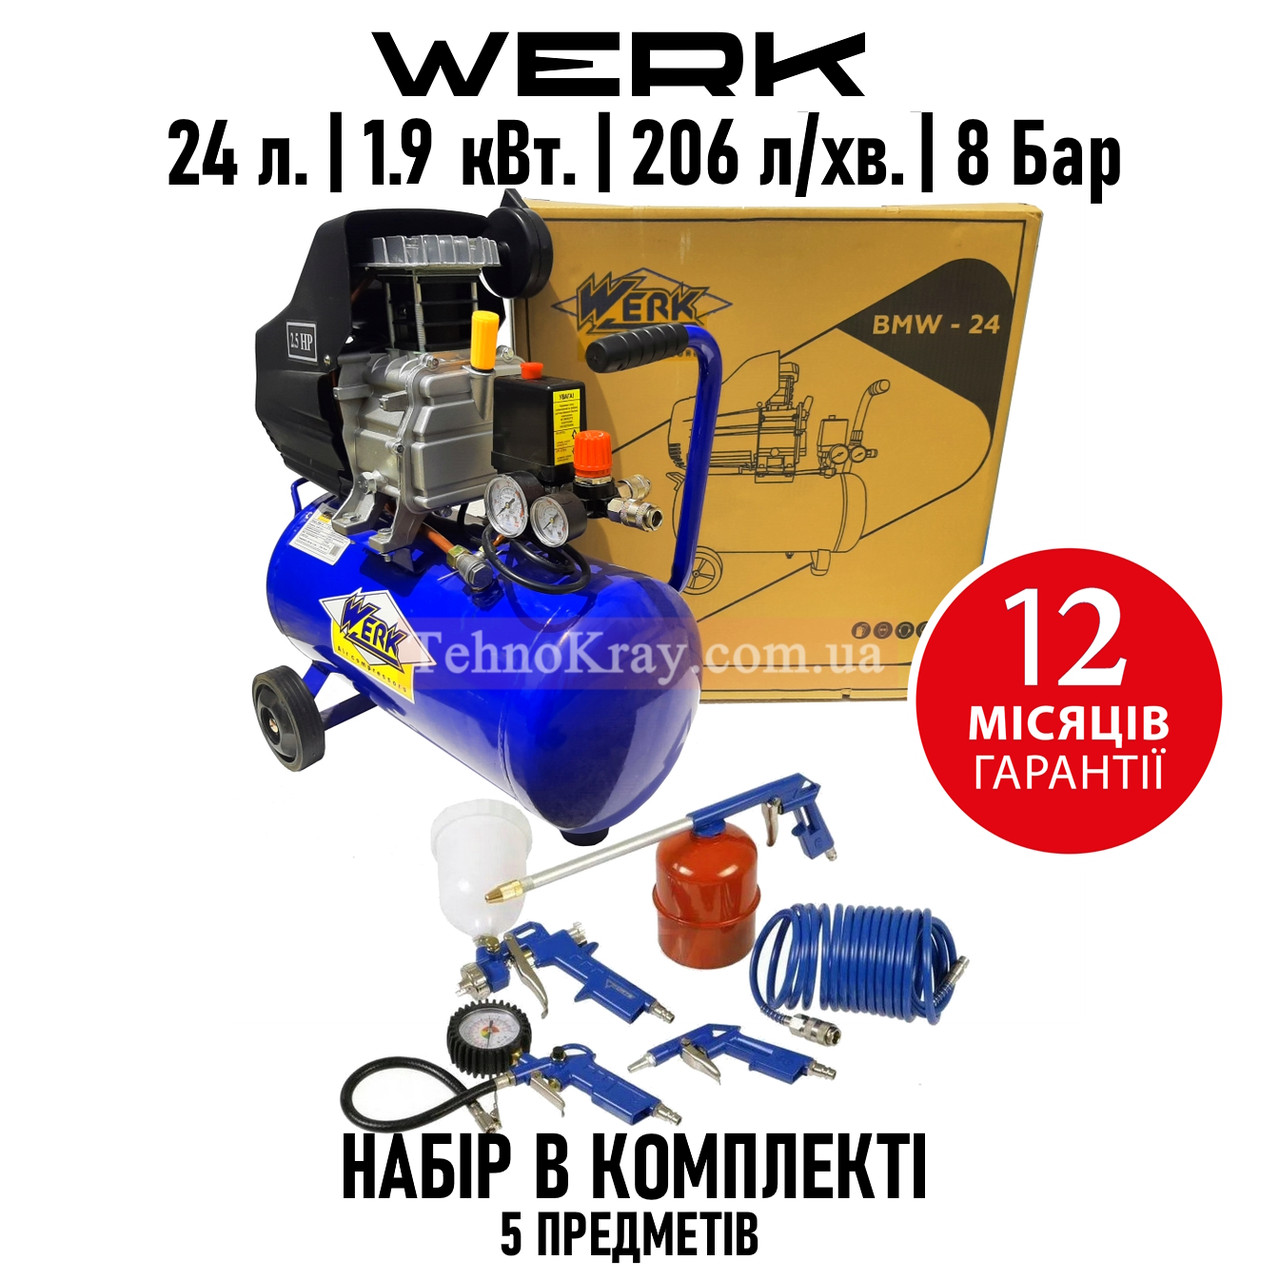 Поршневий компресор Werk BMW-24 | 8 бар | 1.9 кВт | вхід: 206 л/хв | рес-р 24 л | Пневмонабір з 5 предметів